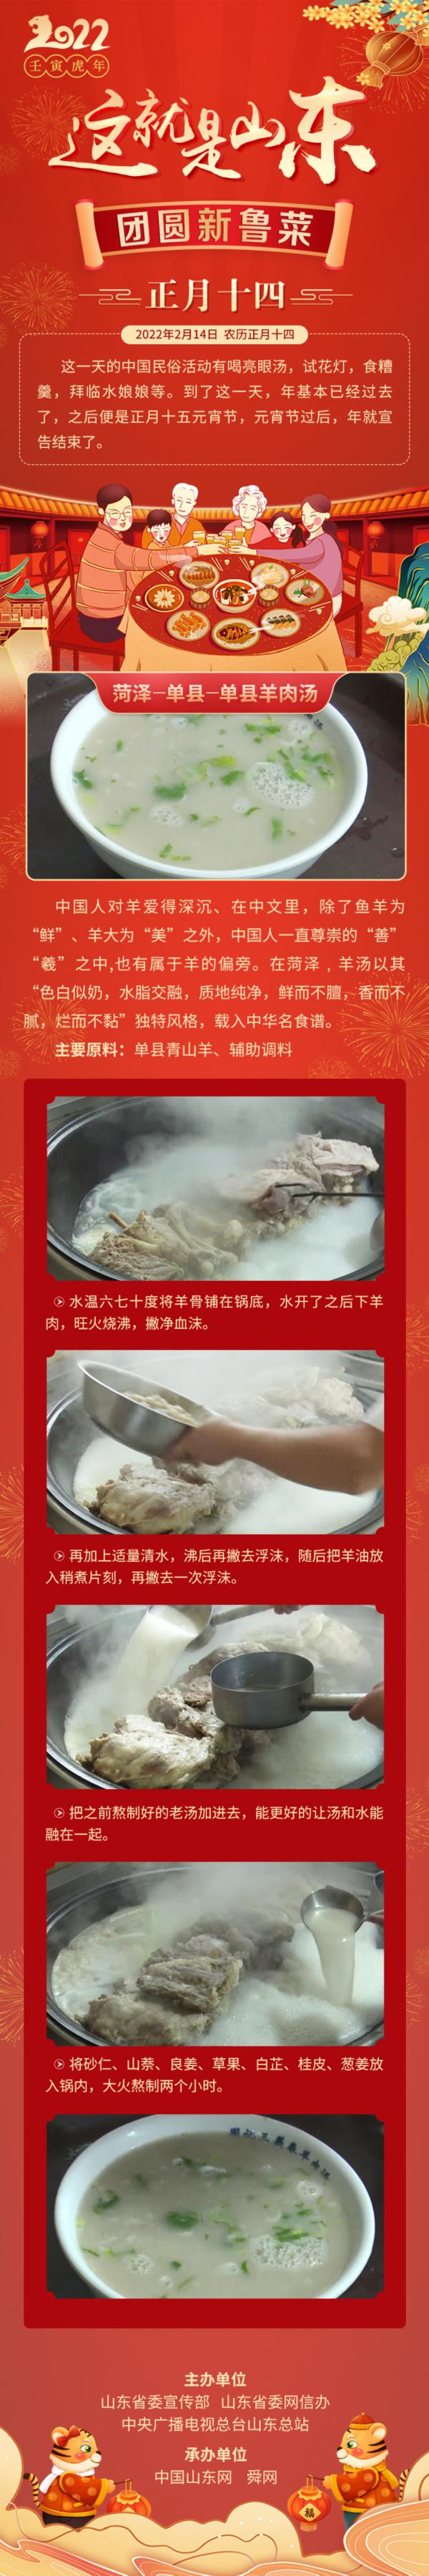 这就是山东・团圆新鲁菜――菏泽-单县-单县羊肉汤